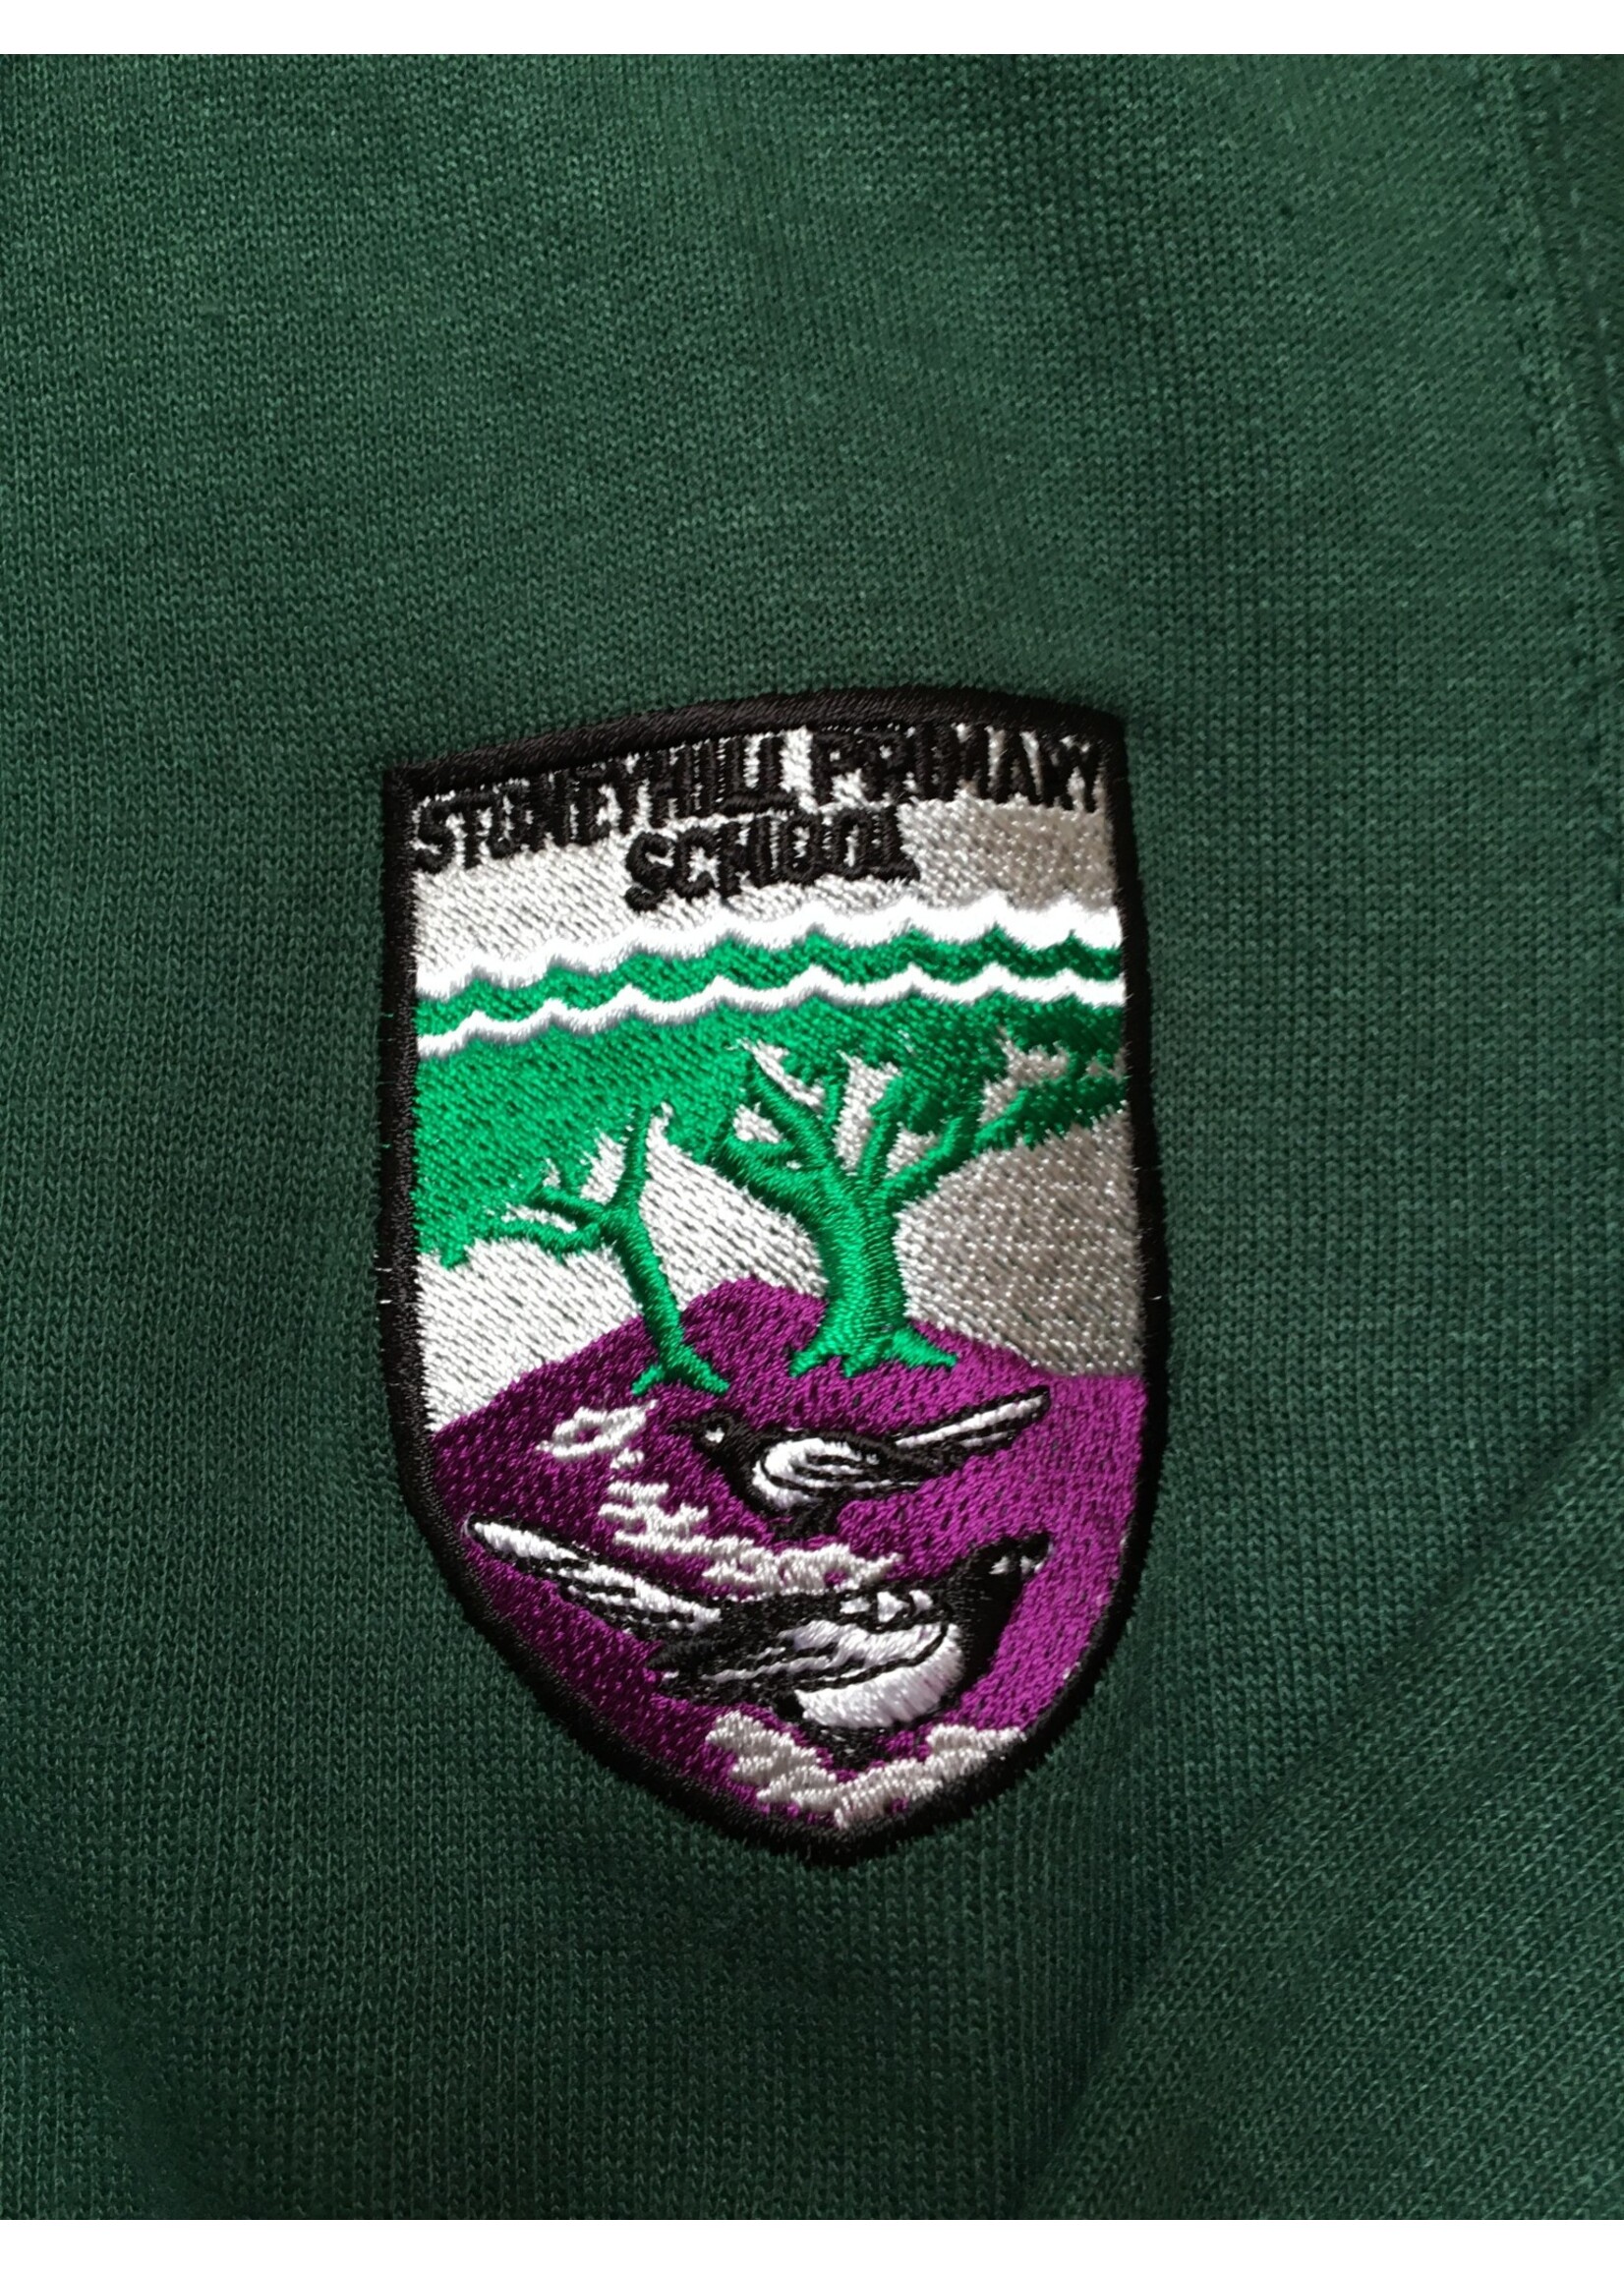 School Uniform - CARDIGAN - STONEYHILL